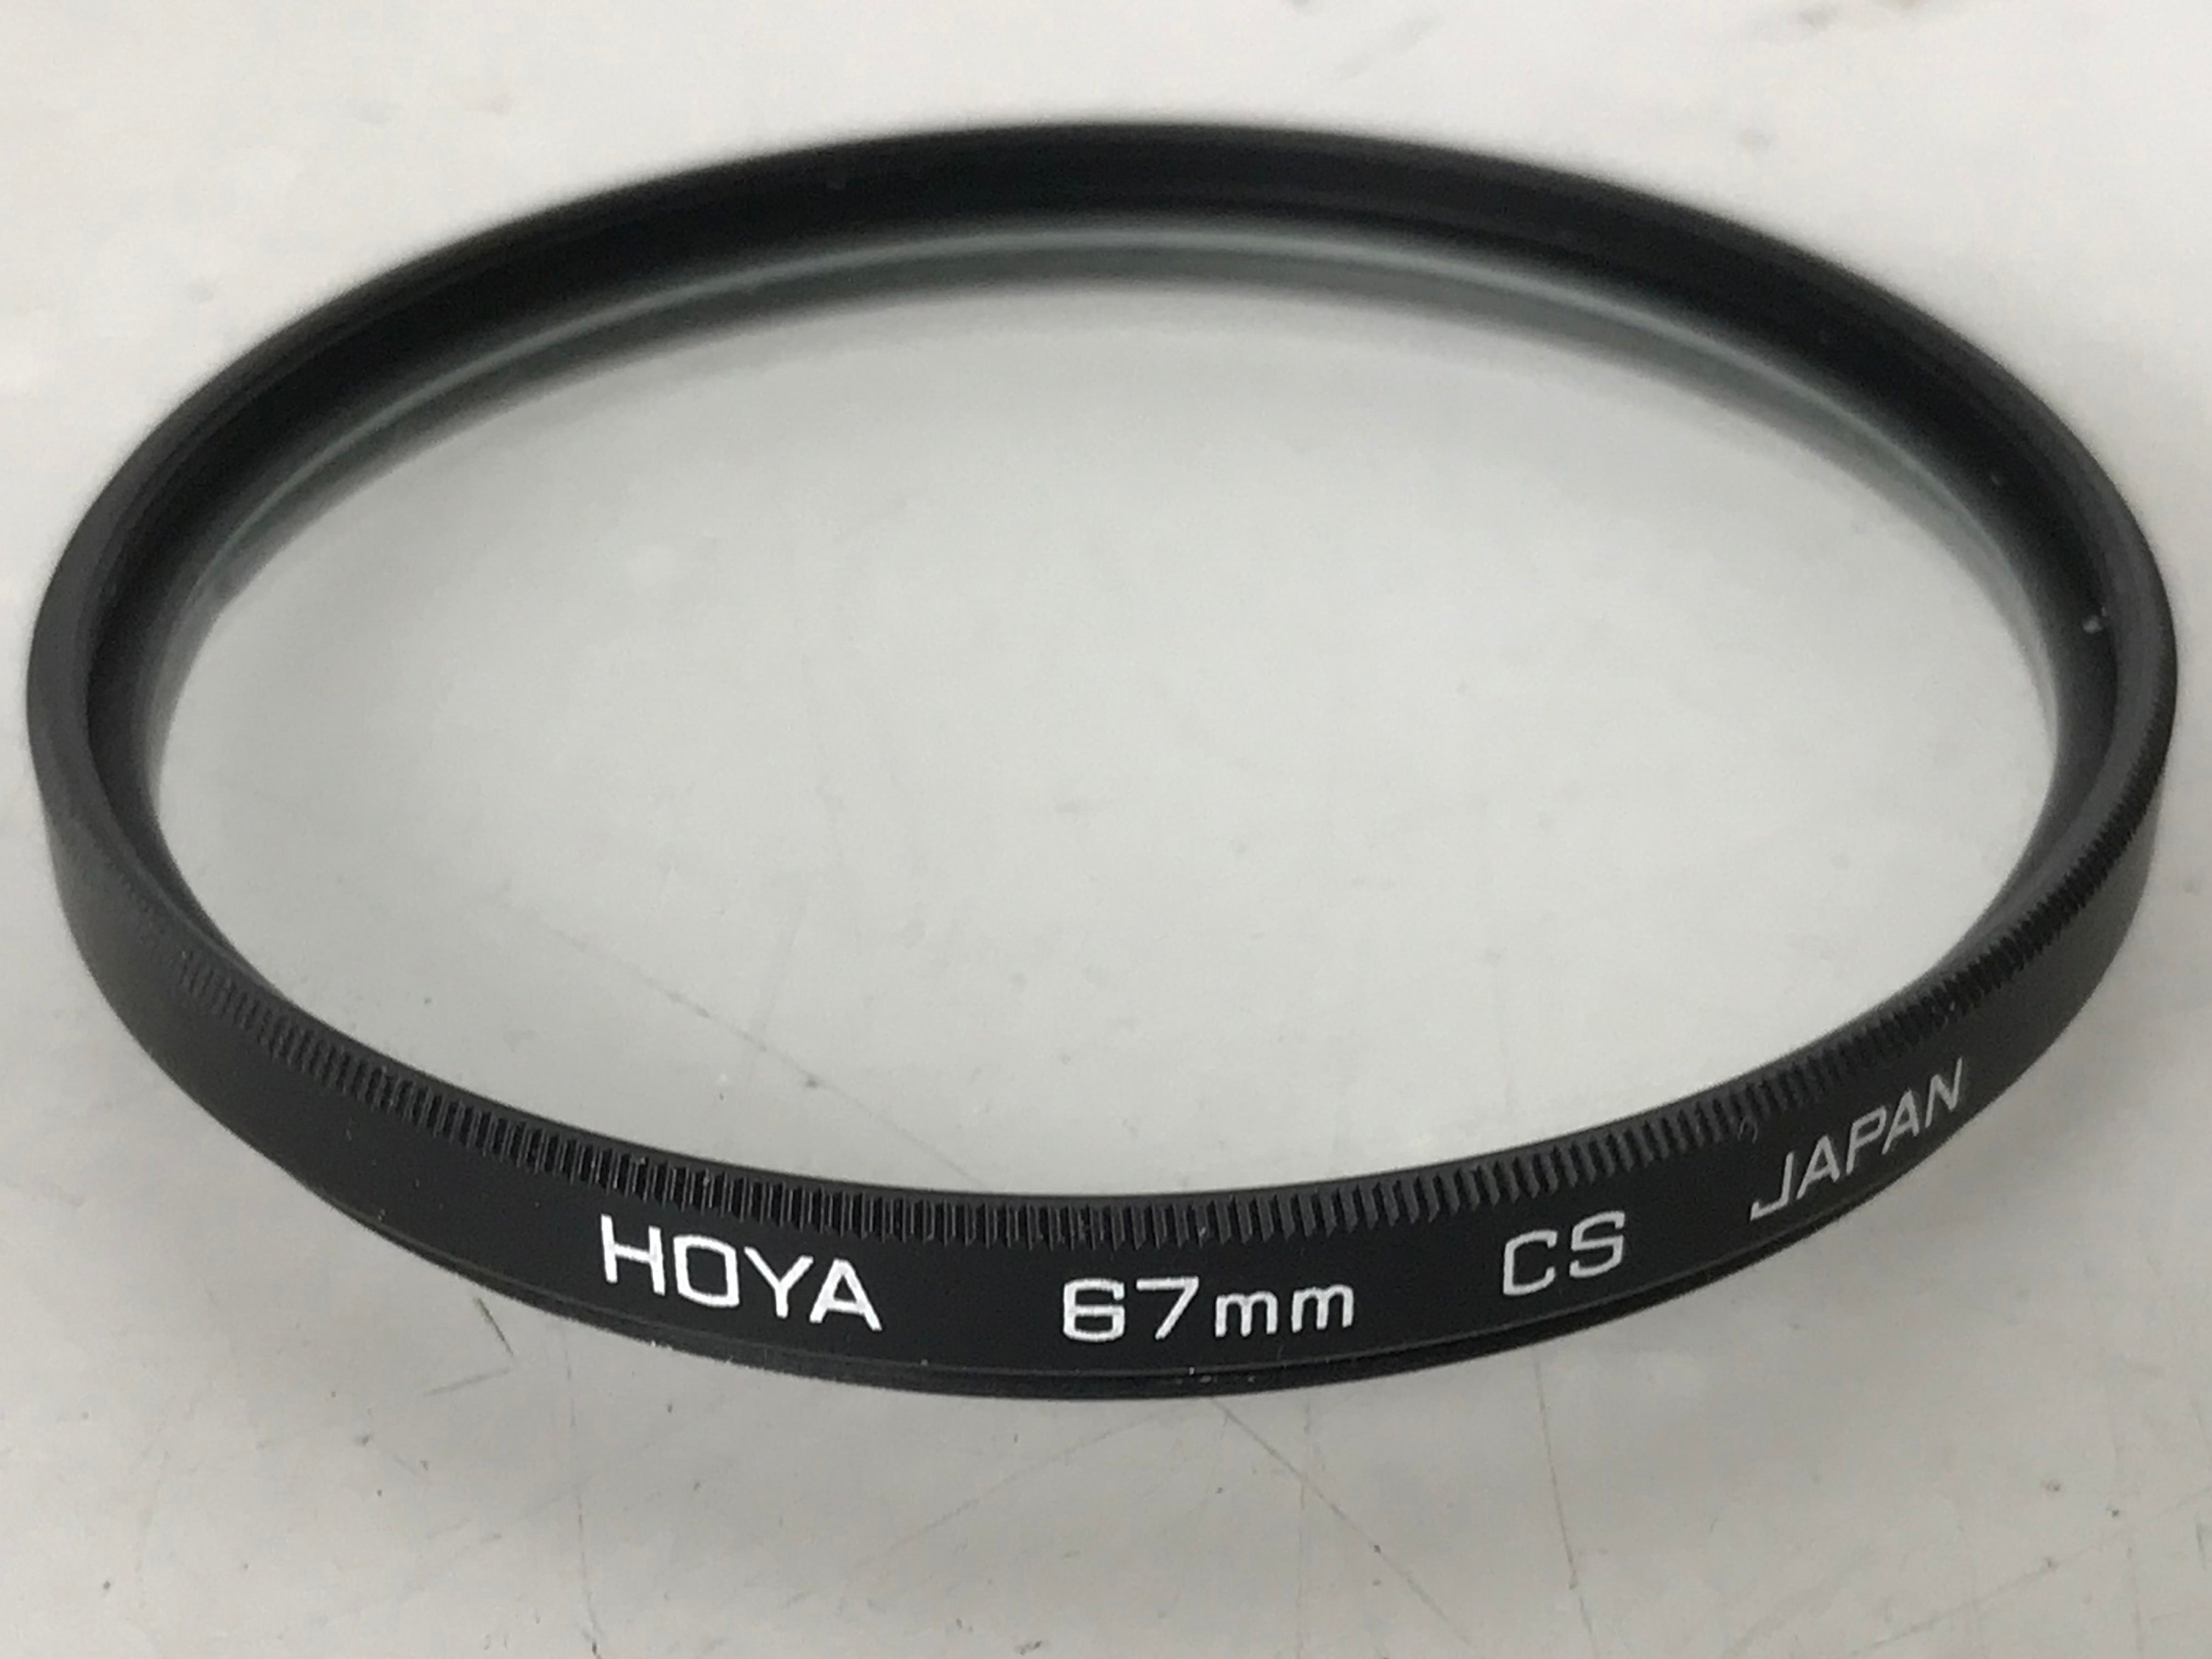 Hoya 67mm Six Point Cross Screen Glass Filter